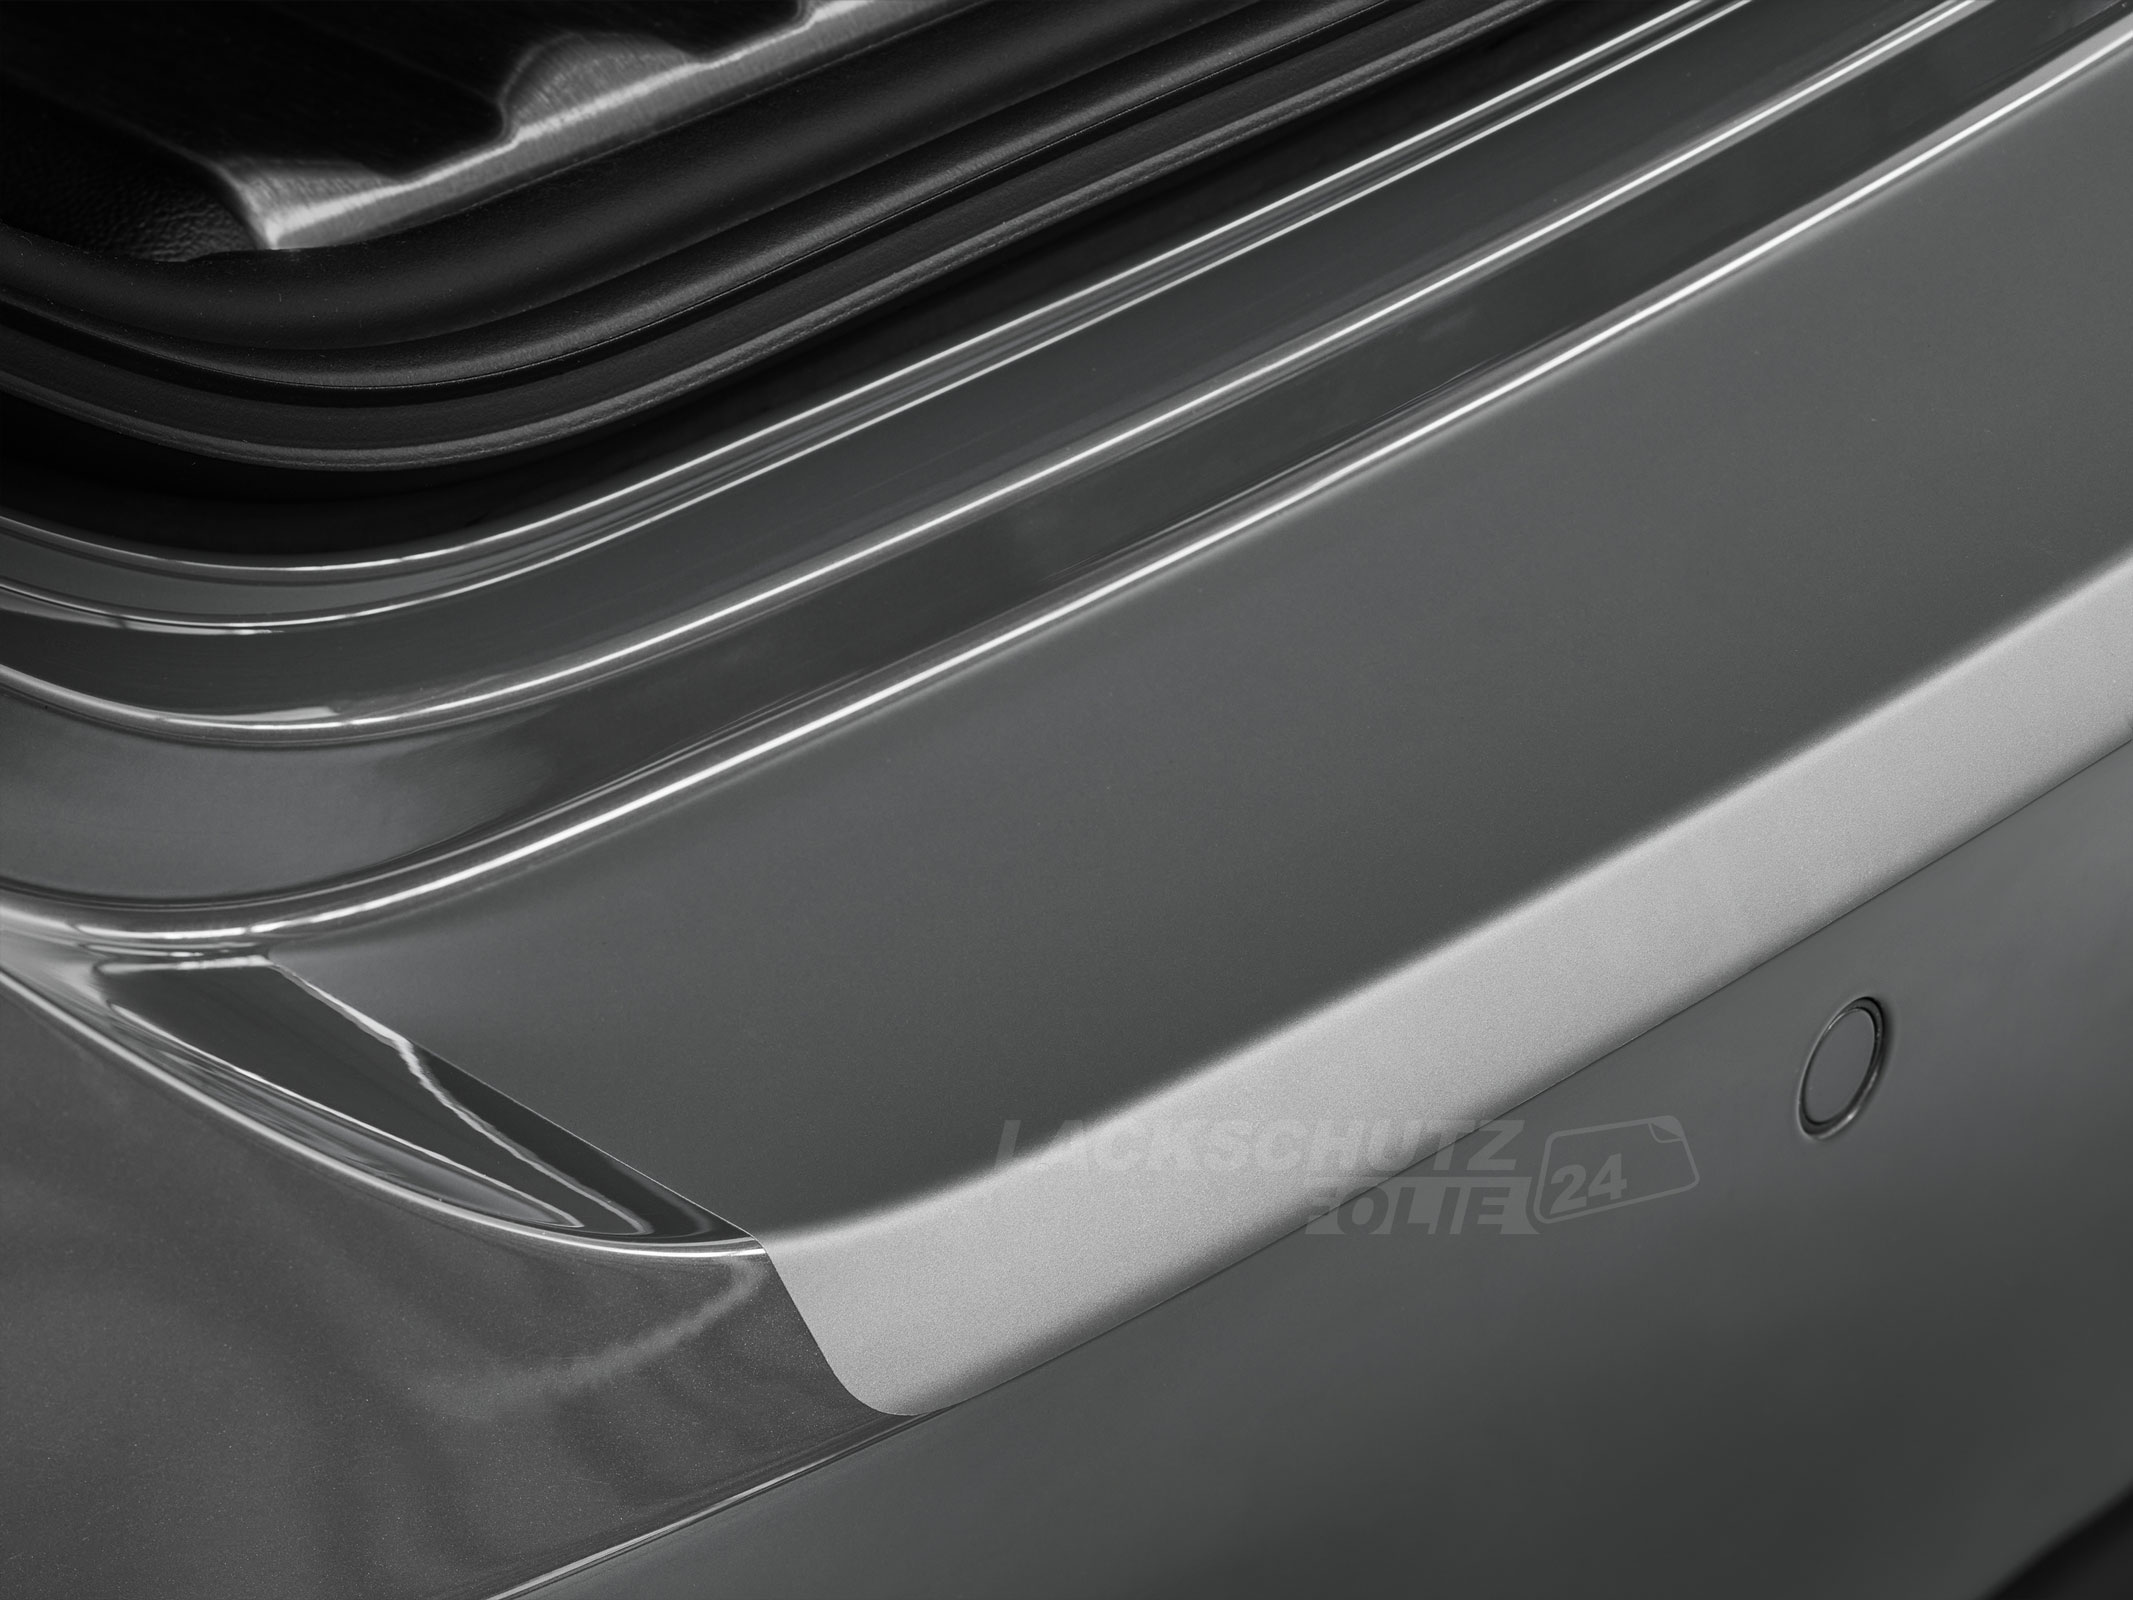 Ladekantenschutzfolie - Transparent Glatt MATT 110 µm stark  für Audi A8 D4, Typ 4H, BJ 2009-2013